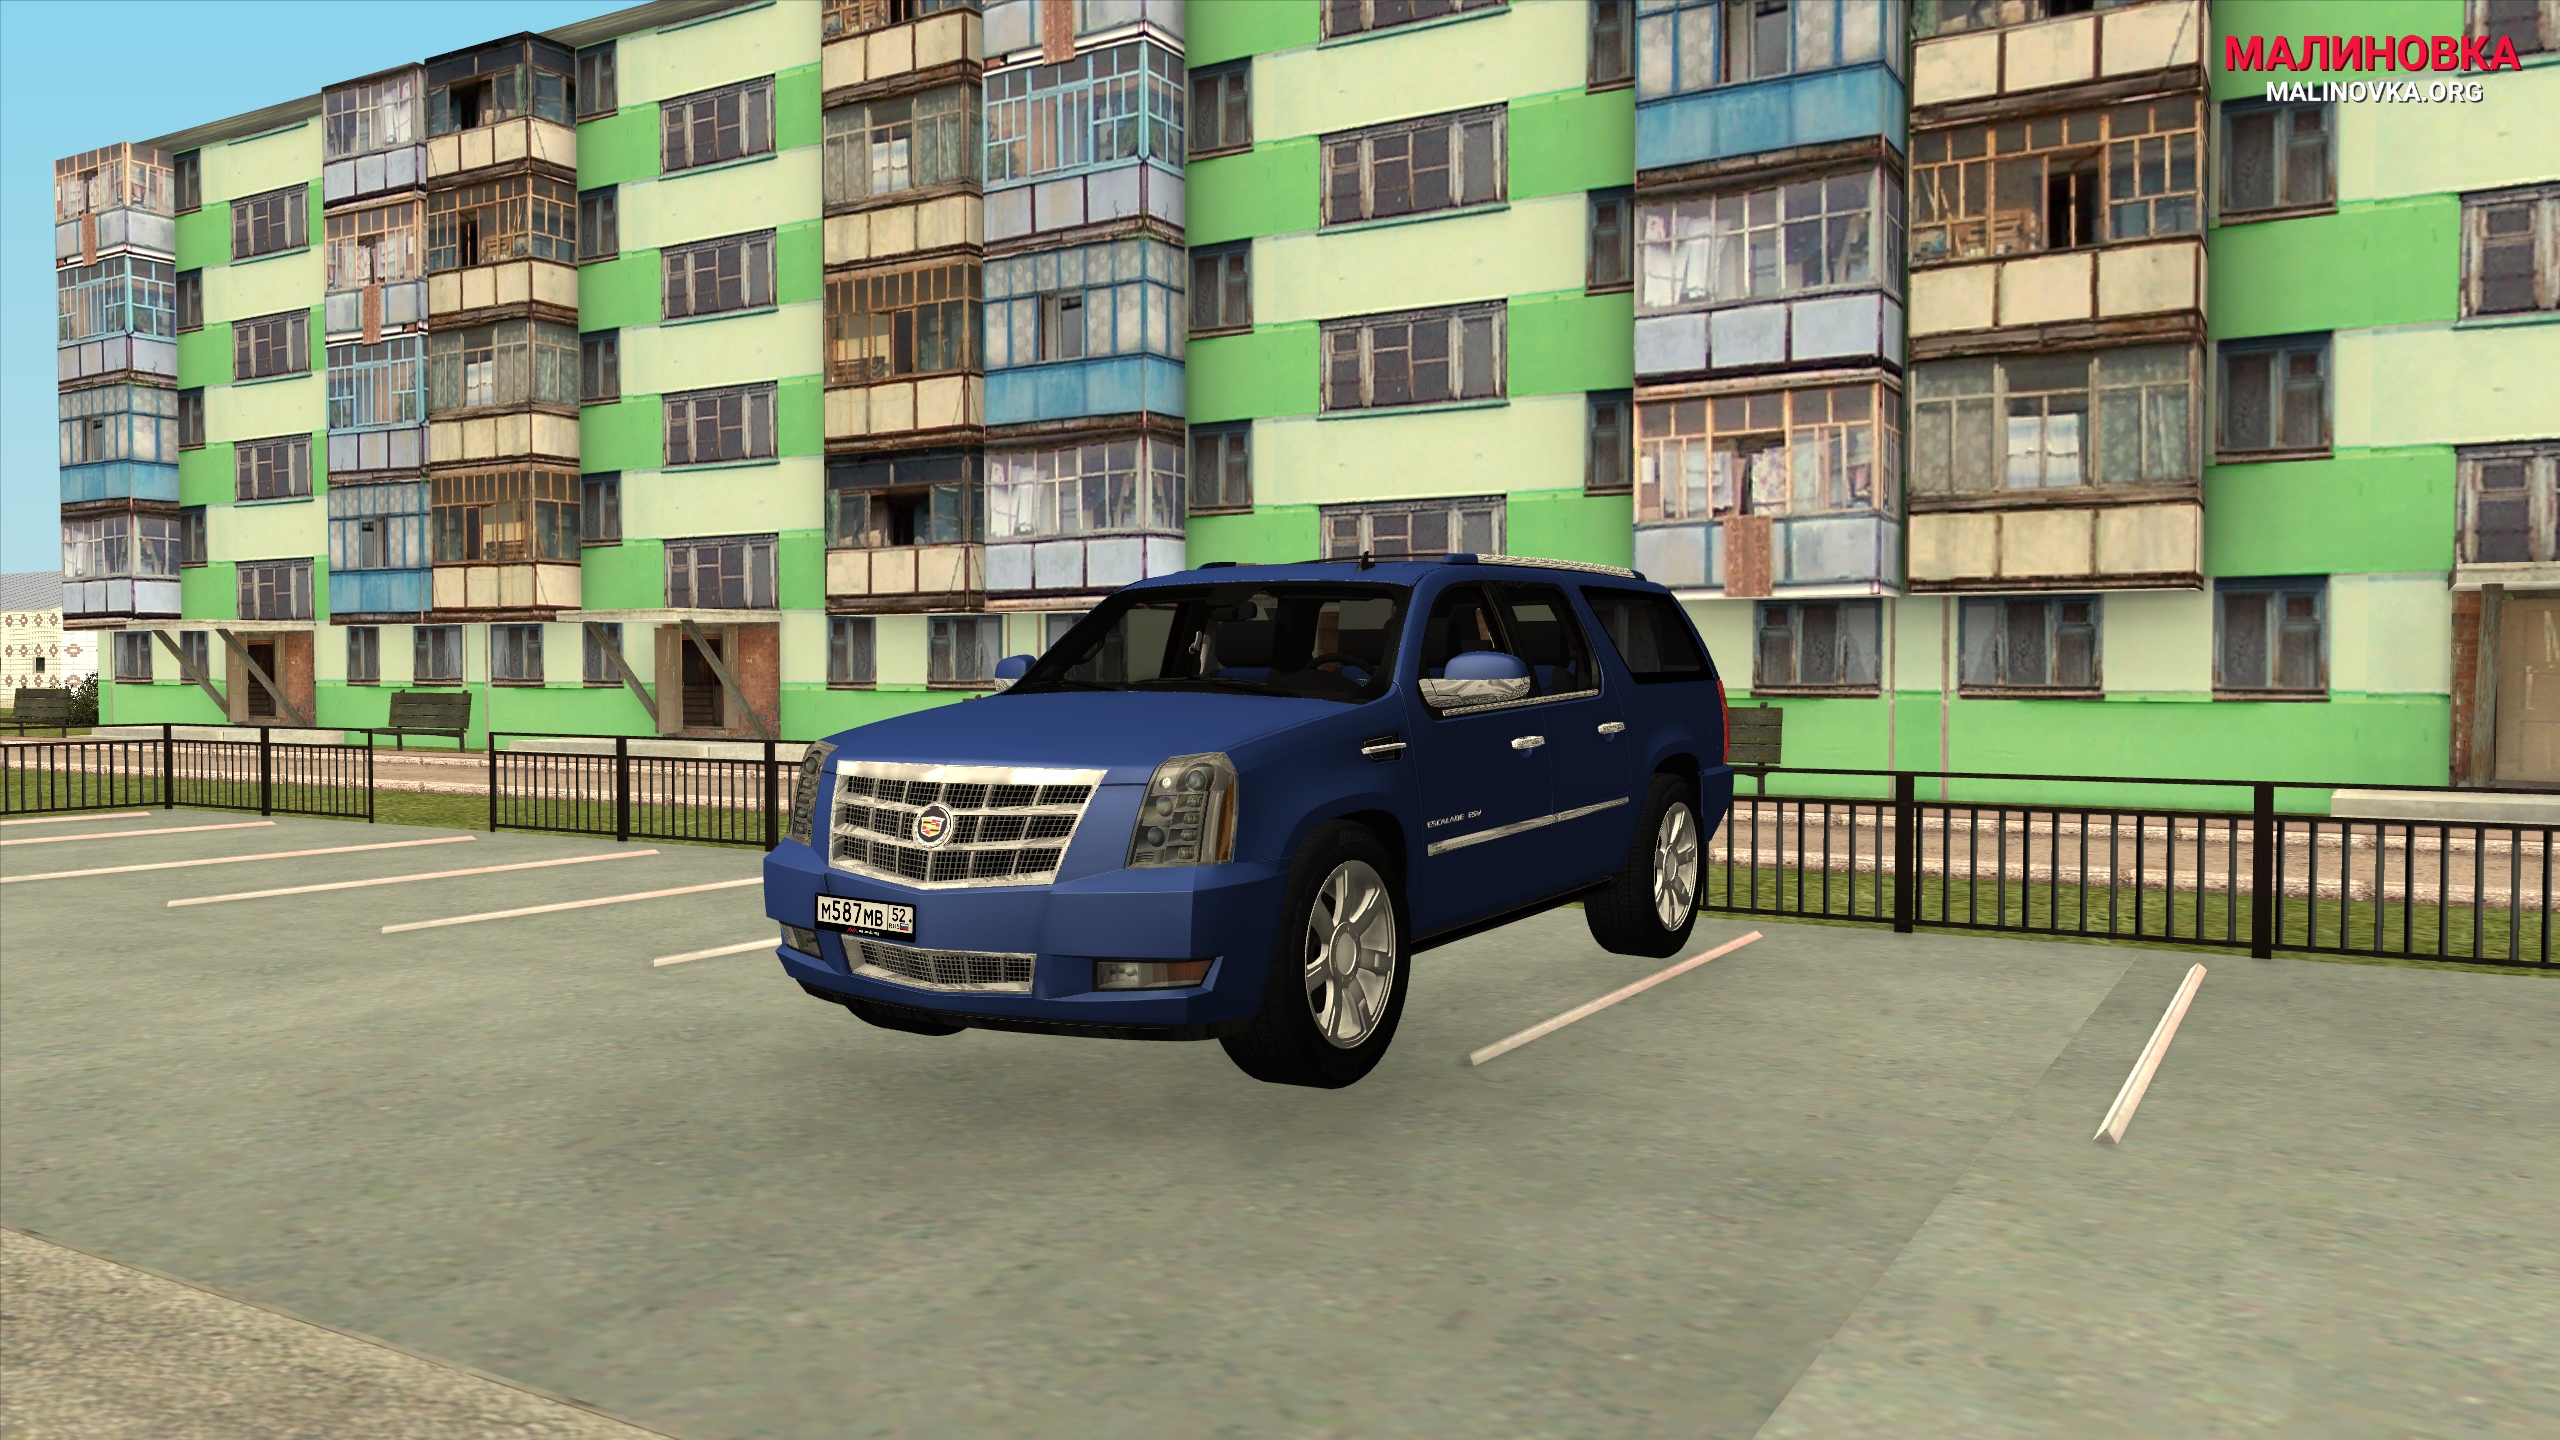 Игра малиновка рп. ГТА Малиновка РП. GTA / Grand Theft auto: San Andreas - Malinovka Rp [+ MP] (2020) PC. Малиновка ГТА 5. Малиновка РП 02.